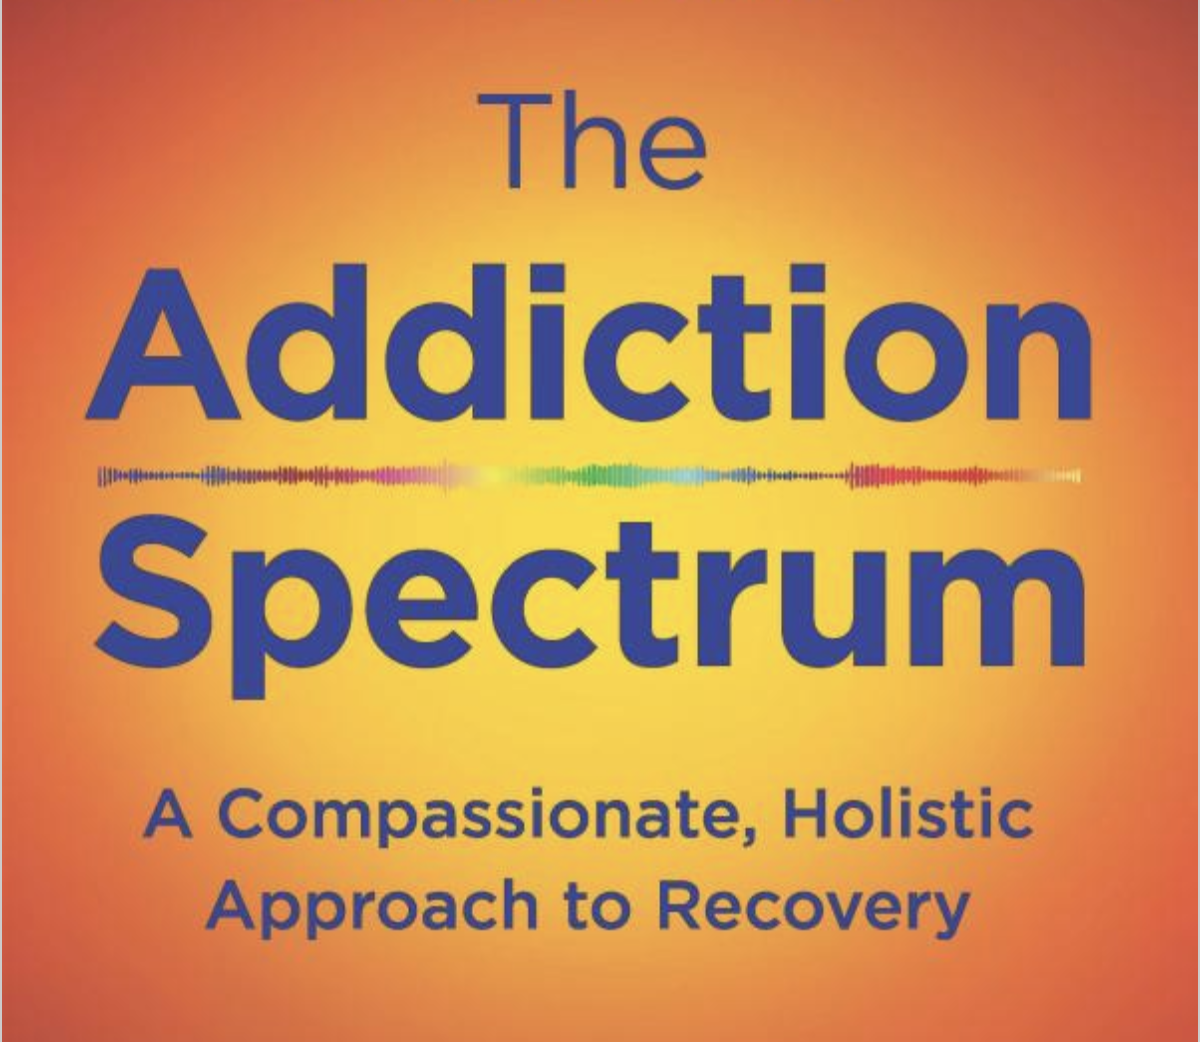 Understanding The ‘Addiction Spectrum’